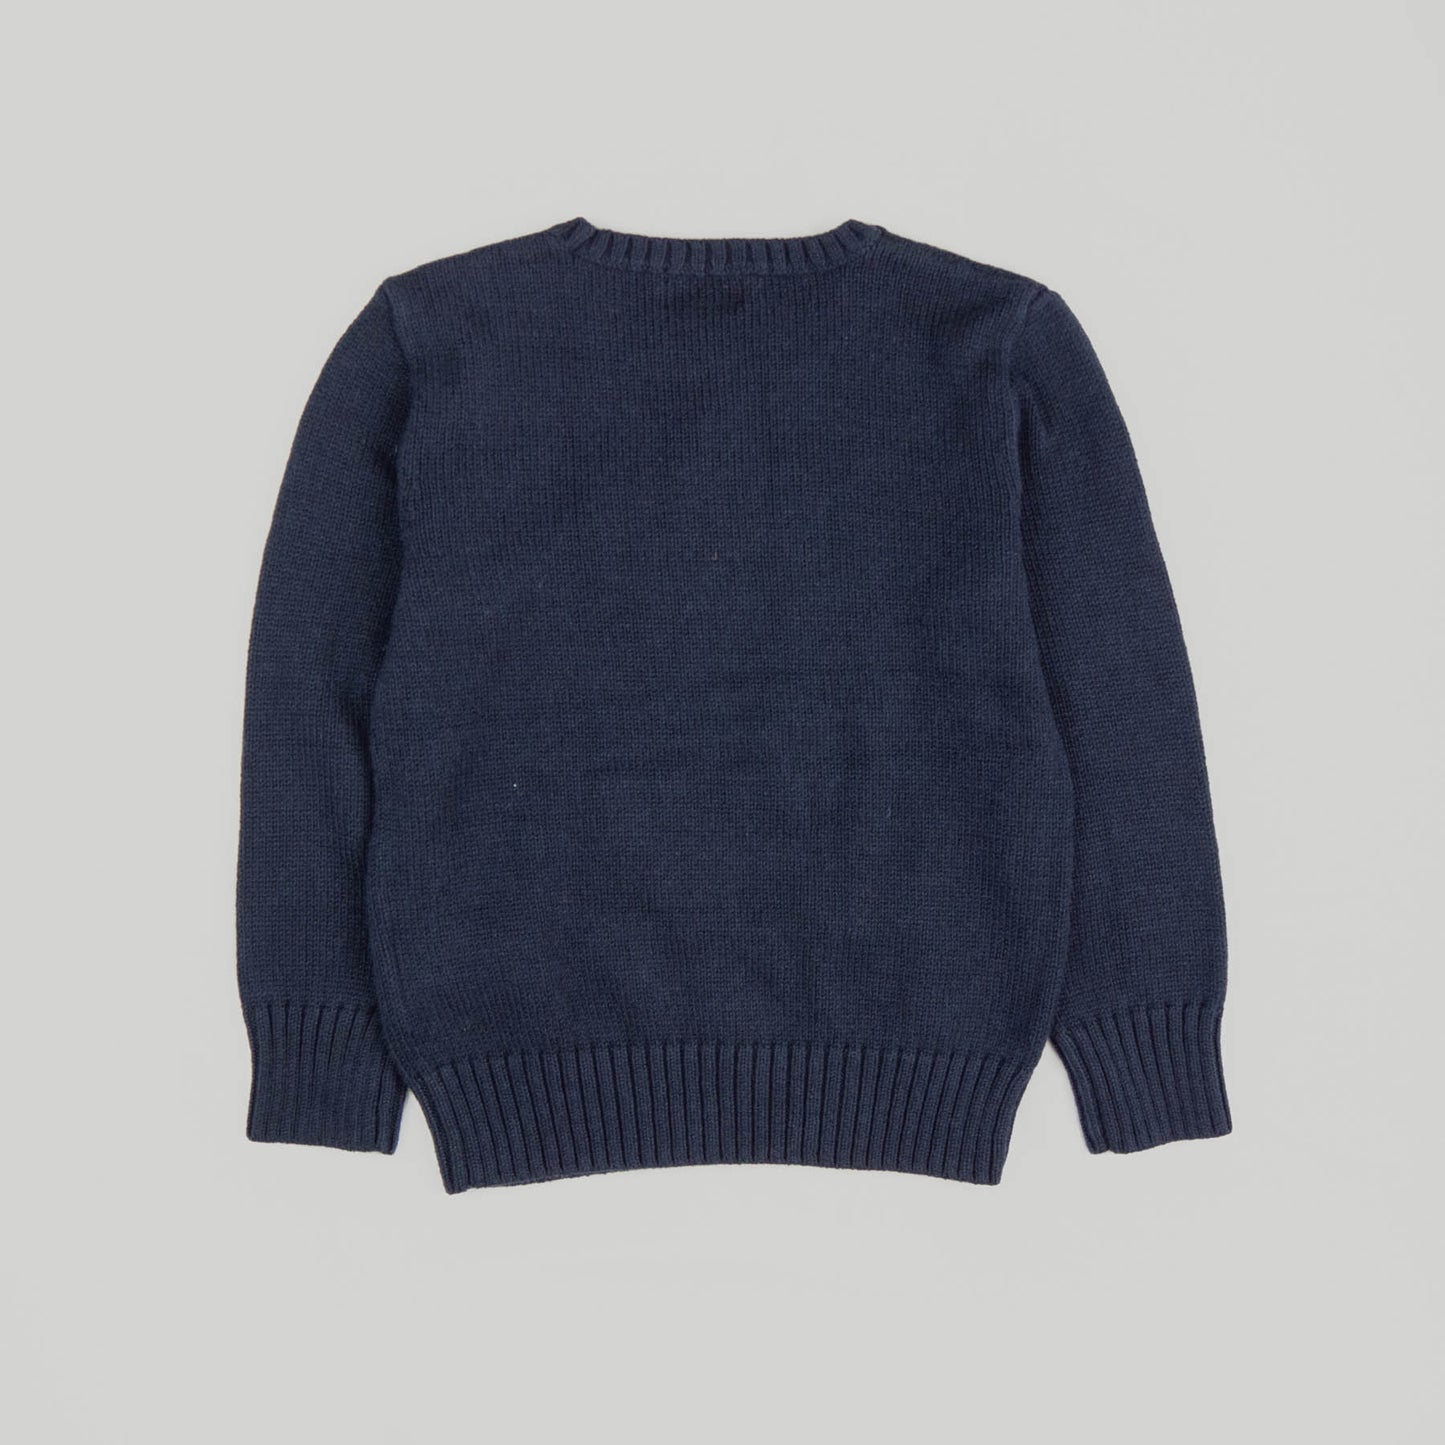 Ralph Lauren Polo - Cotton Bear Sweater